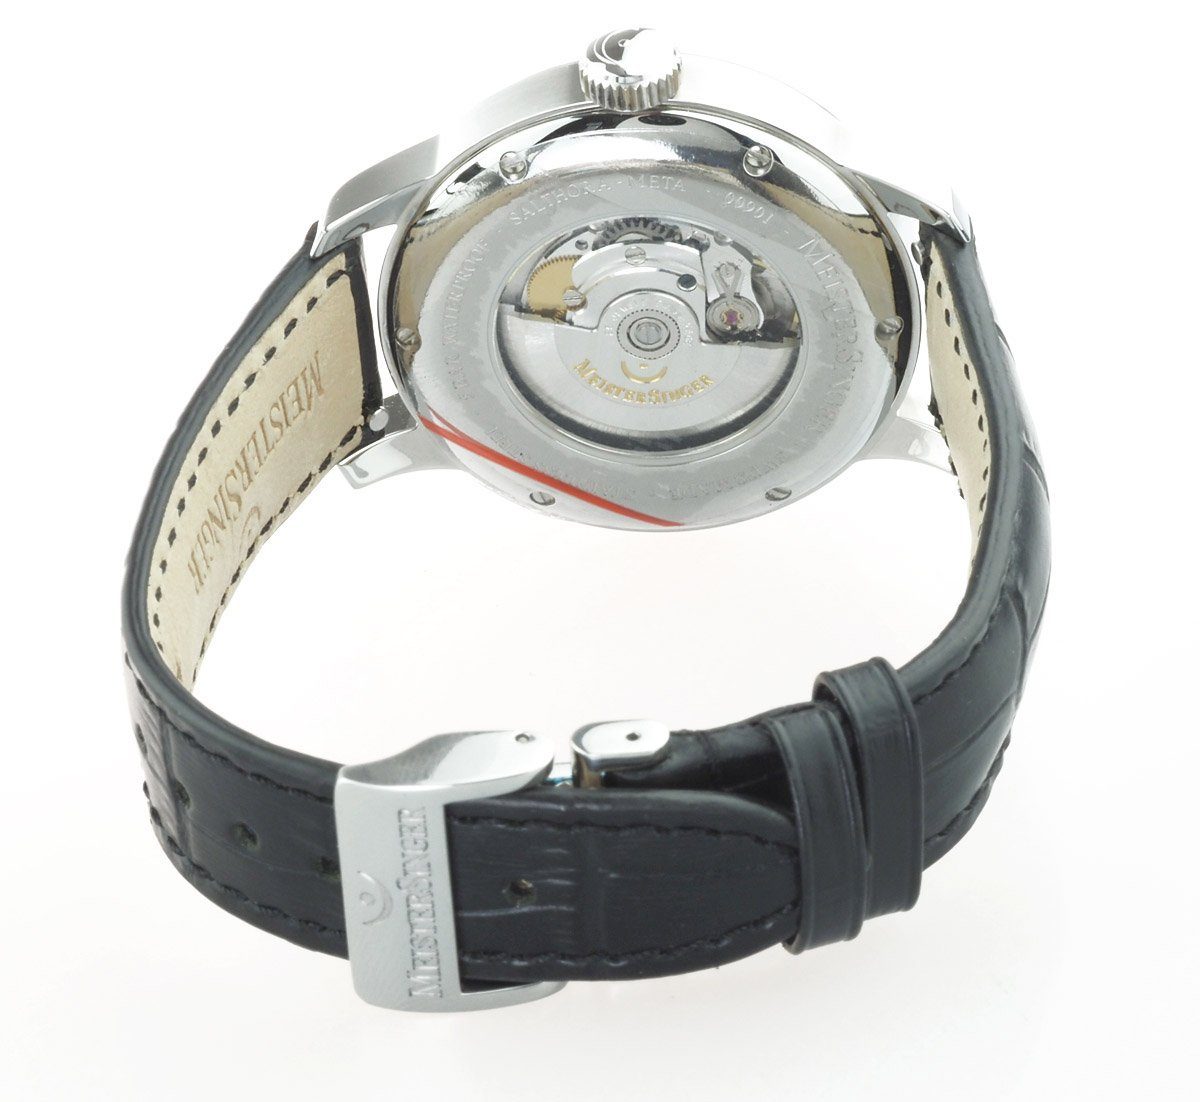 Uhr Einzeiger SALTHORA Einzeiger SAM907 Swiss META Uhr Herren Automatikuhr 43MM, Meistersinger Uhr Made